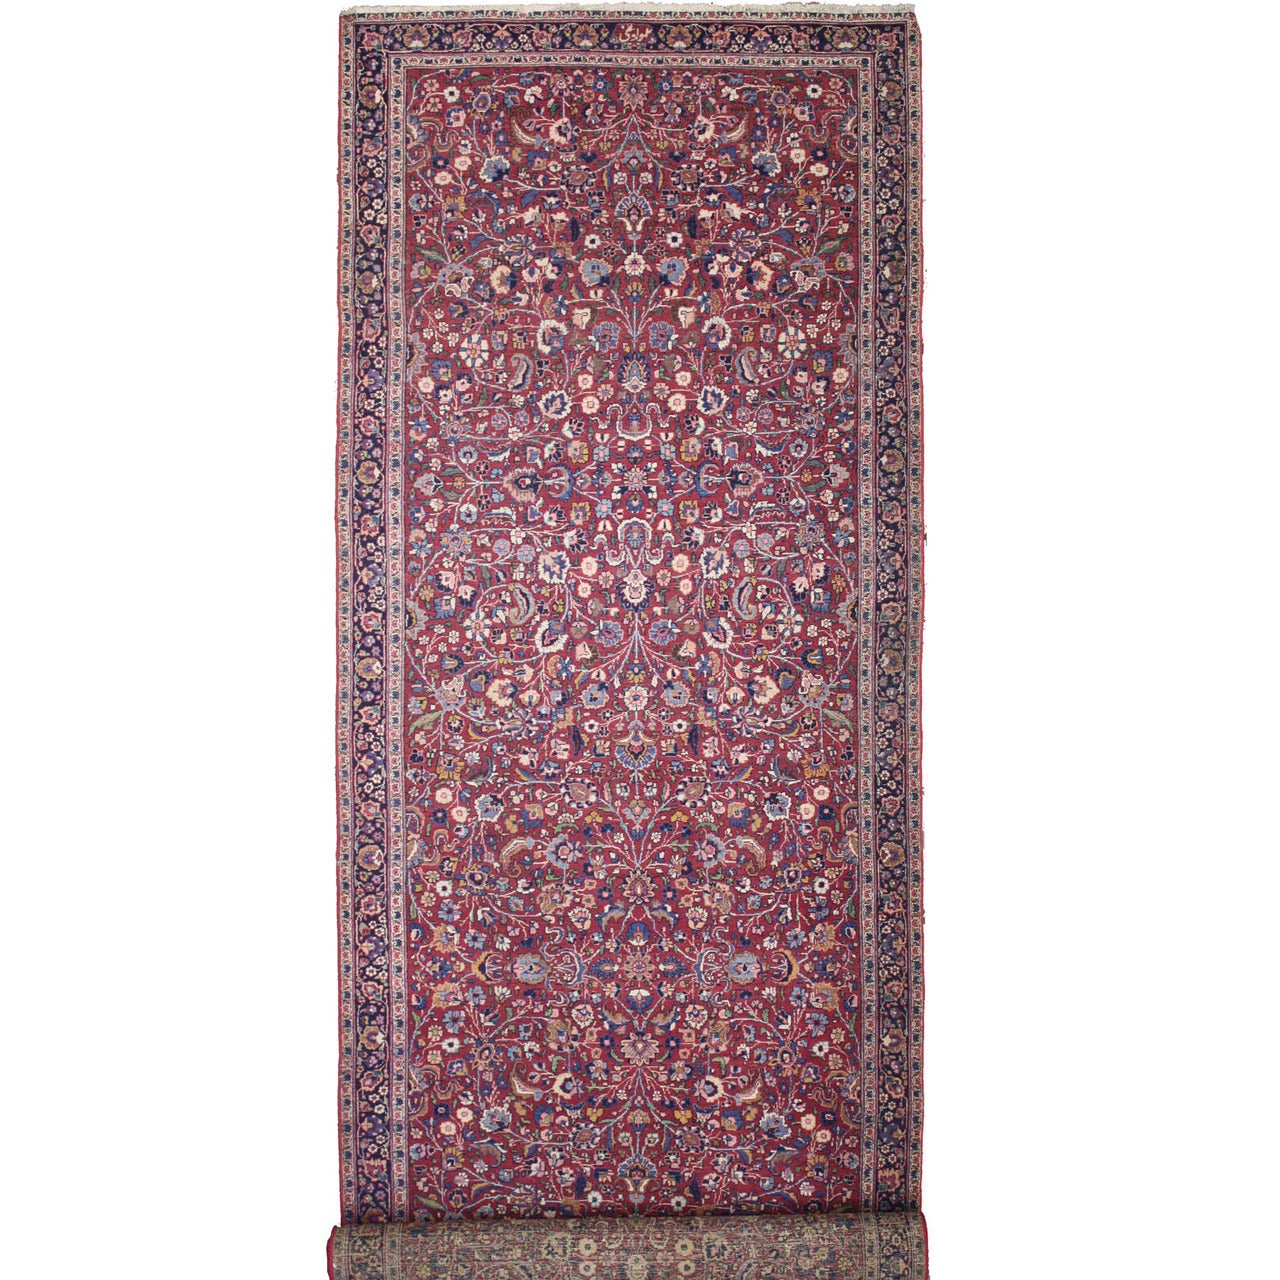 Tapis de couloir persan ancien Mashhad avec style du Vieux Monde, tapis de couloir extra long